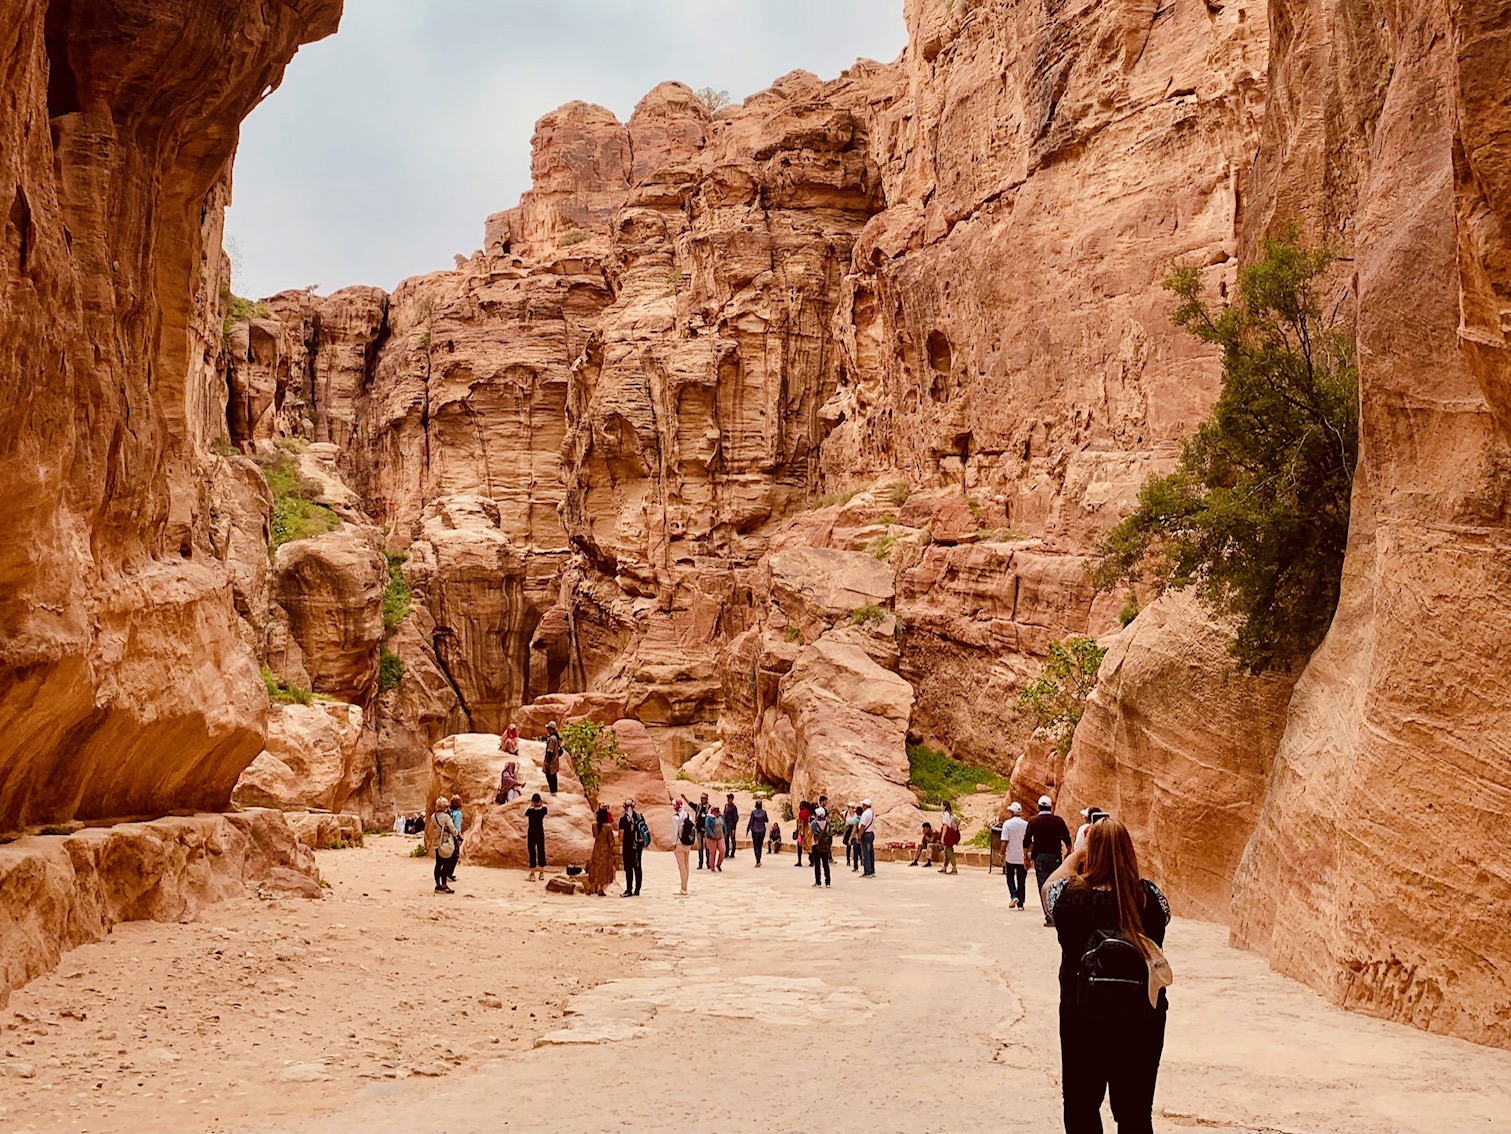 De siq kloof Petra in Jordanië